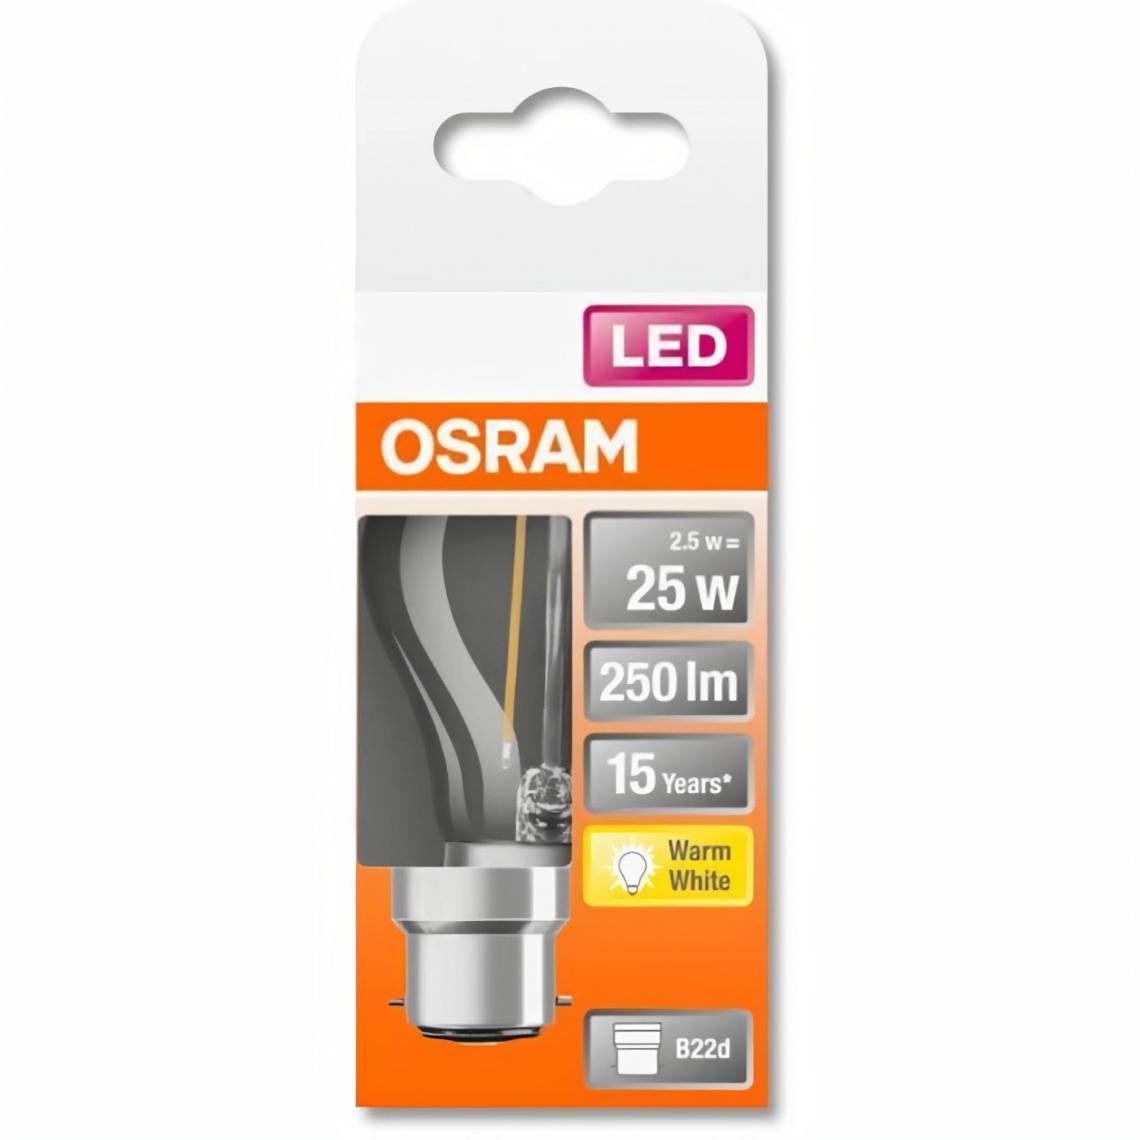 Osram - OSRAM Ampoule LED Sphérique clair filament 2,5W=25 B22 chaud - Ampoules LED